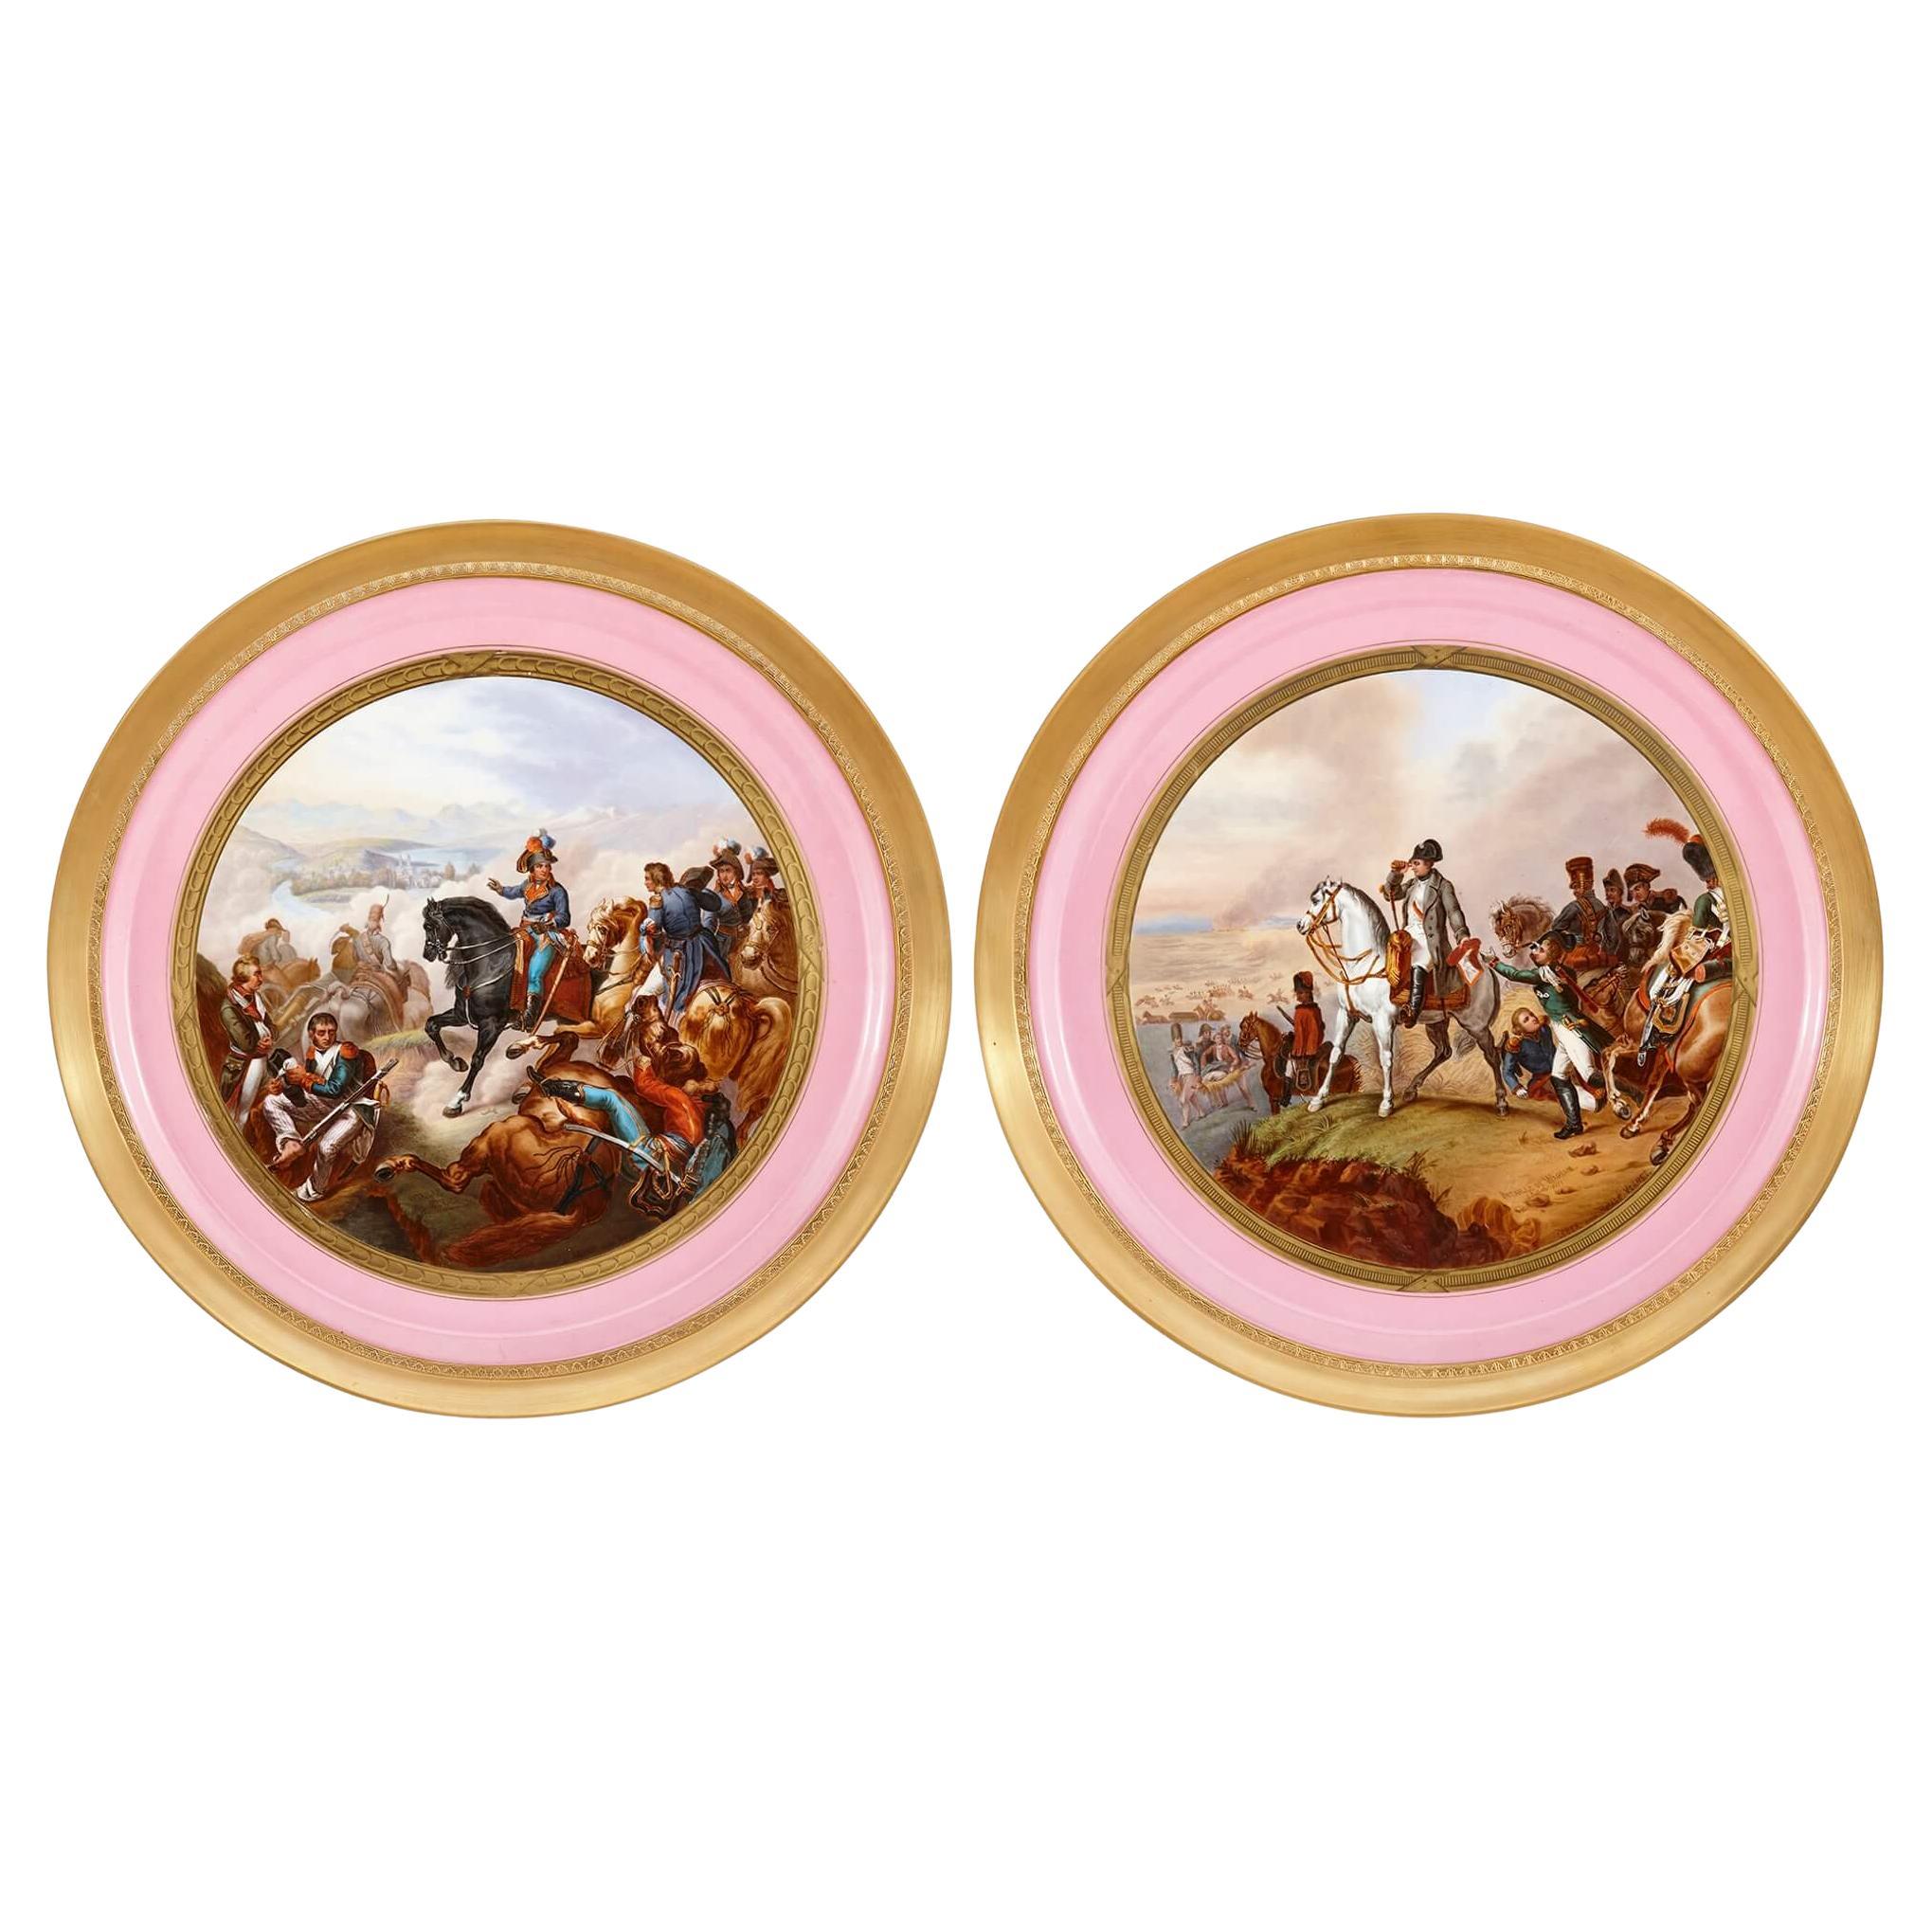 Une grande paire de assiettes de présentation en porcelaine peinte de style napoléonien